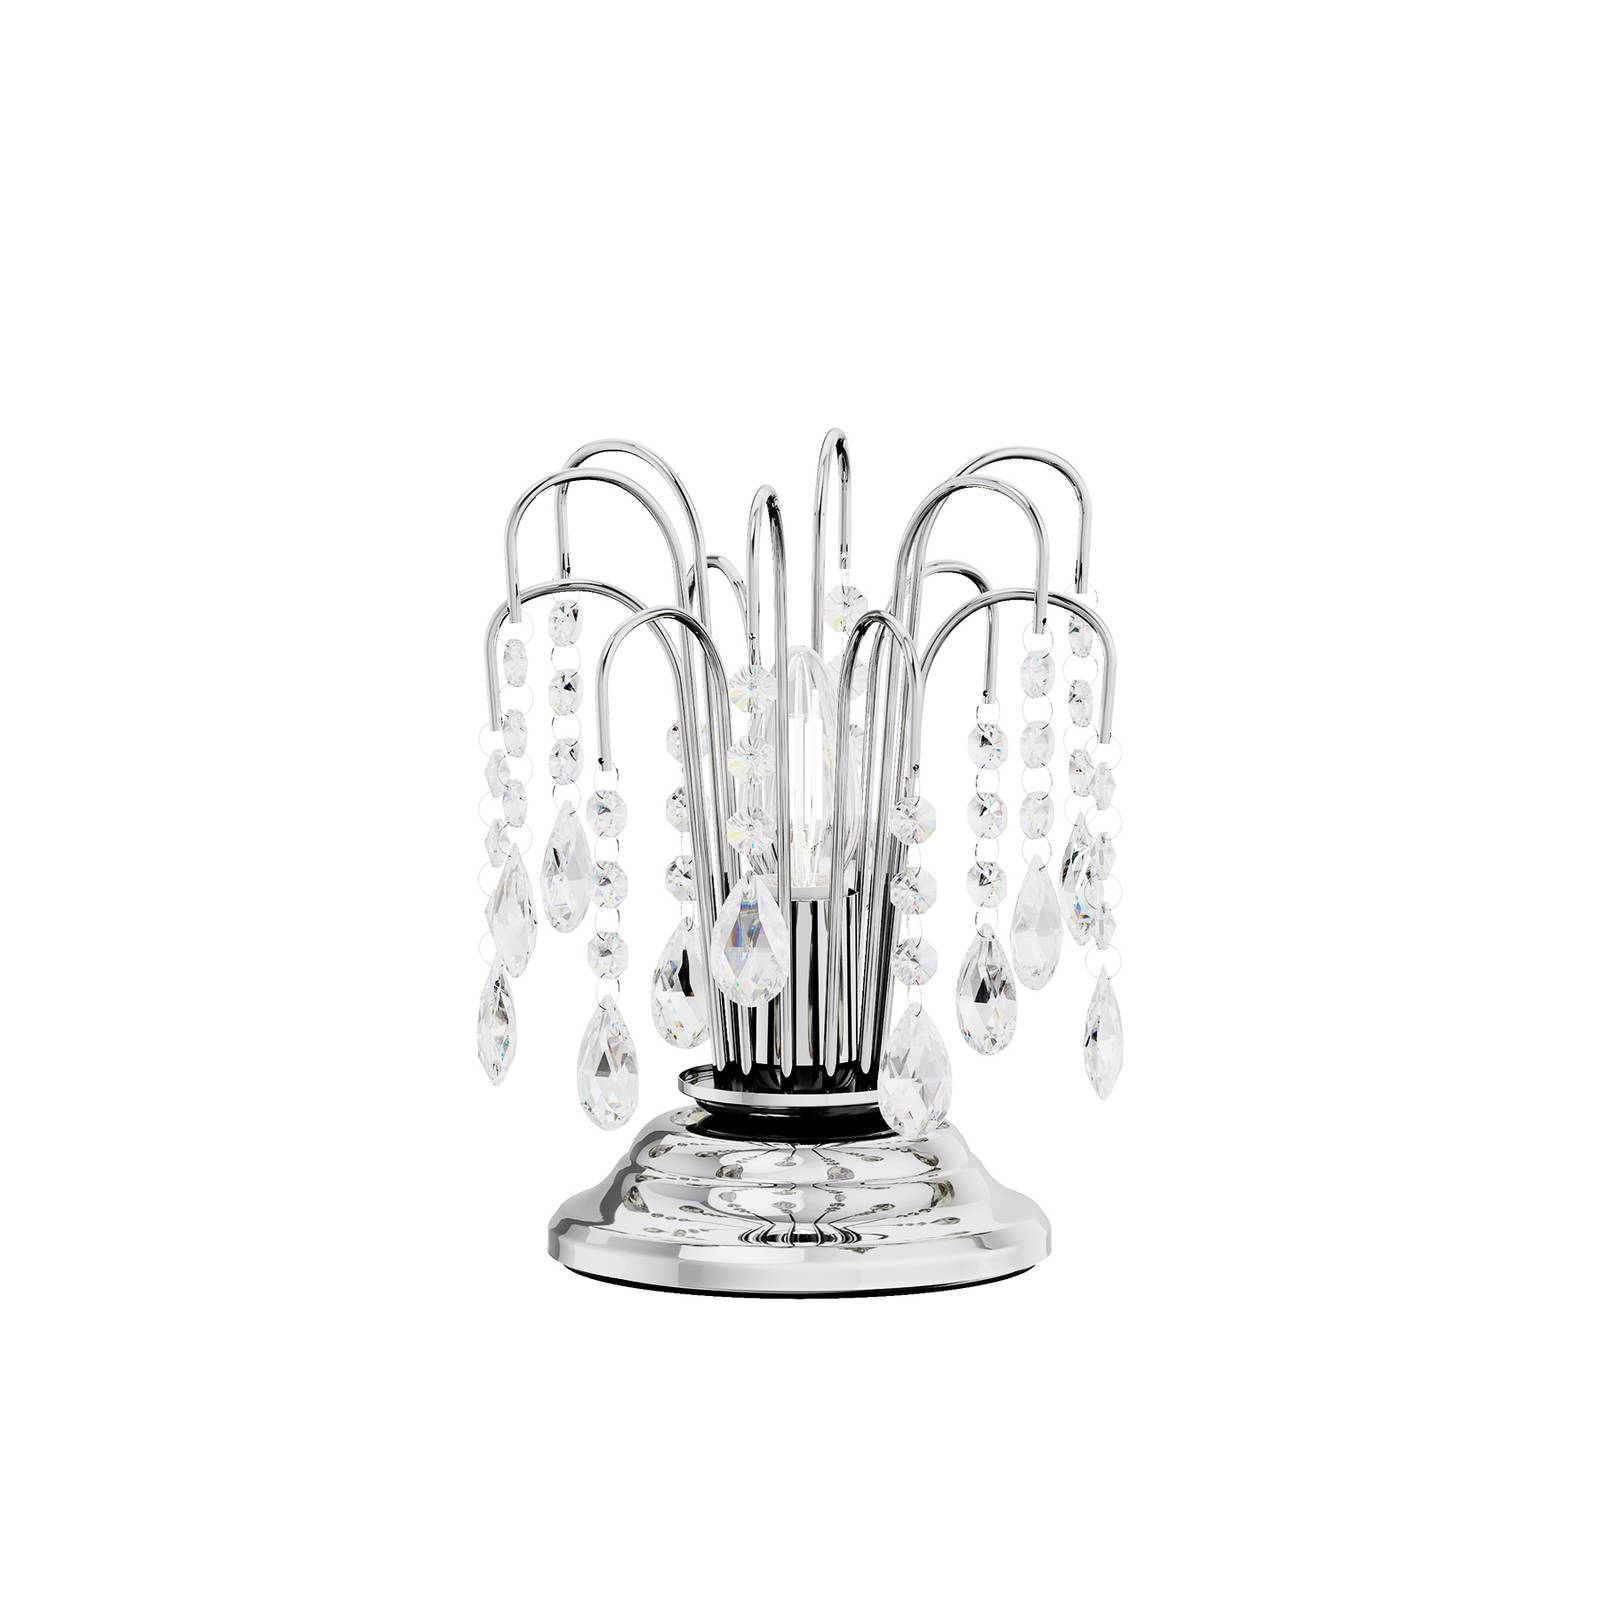 ONLI Tischlampe Pioggia mit Kristallregen, 26cm, chrom